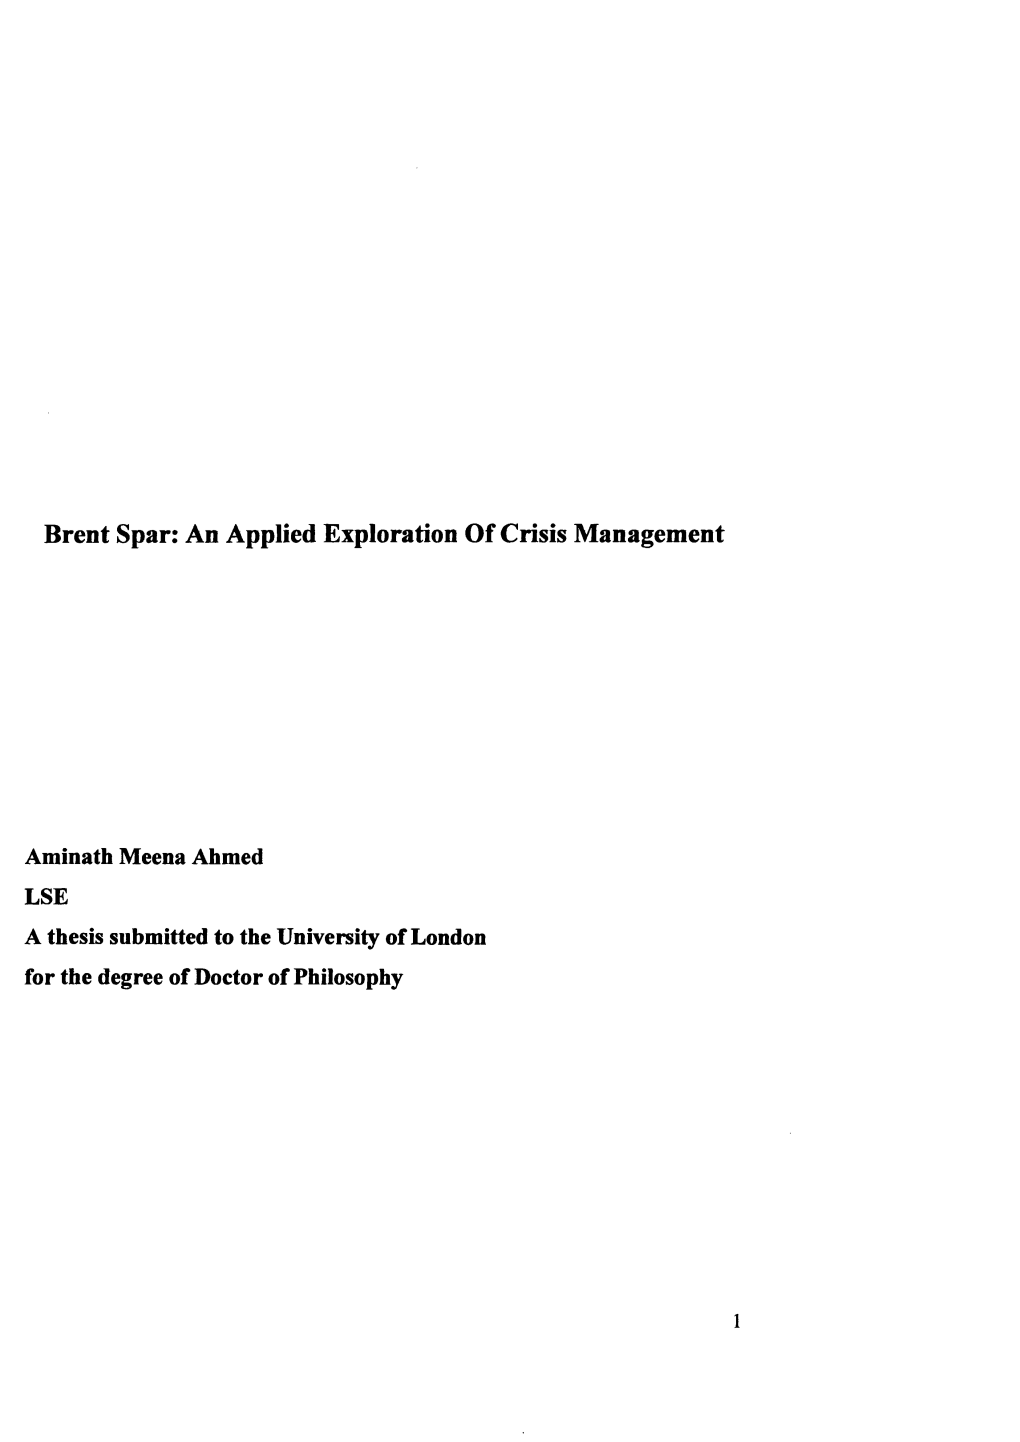 Brent Spar: an Applied Exploration of Crisis Management